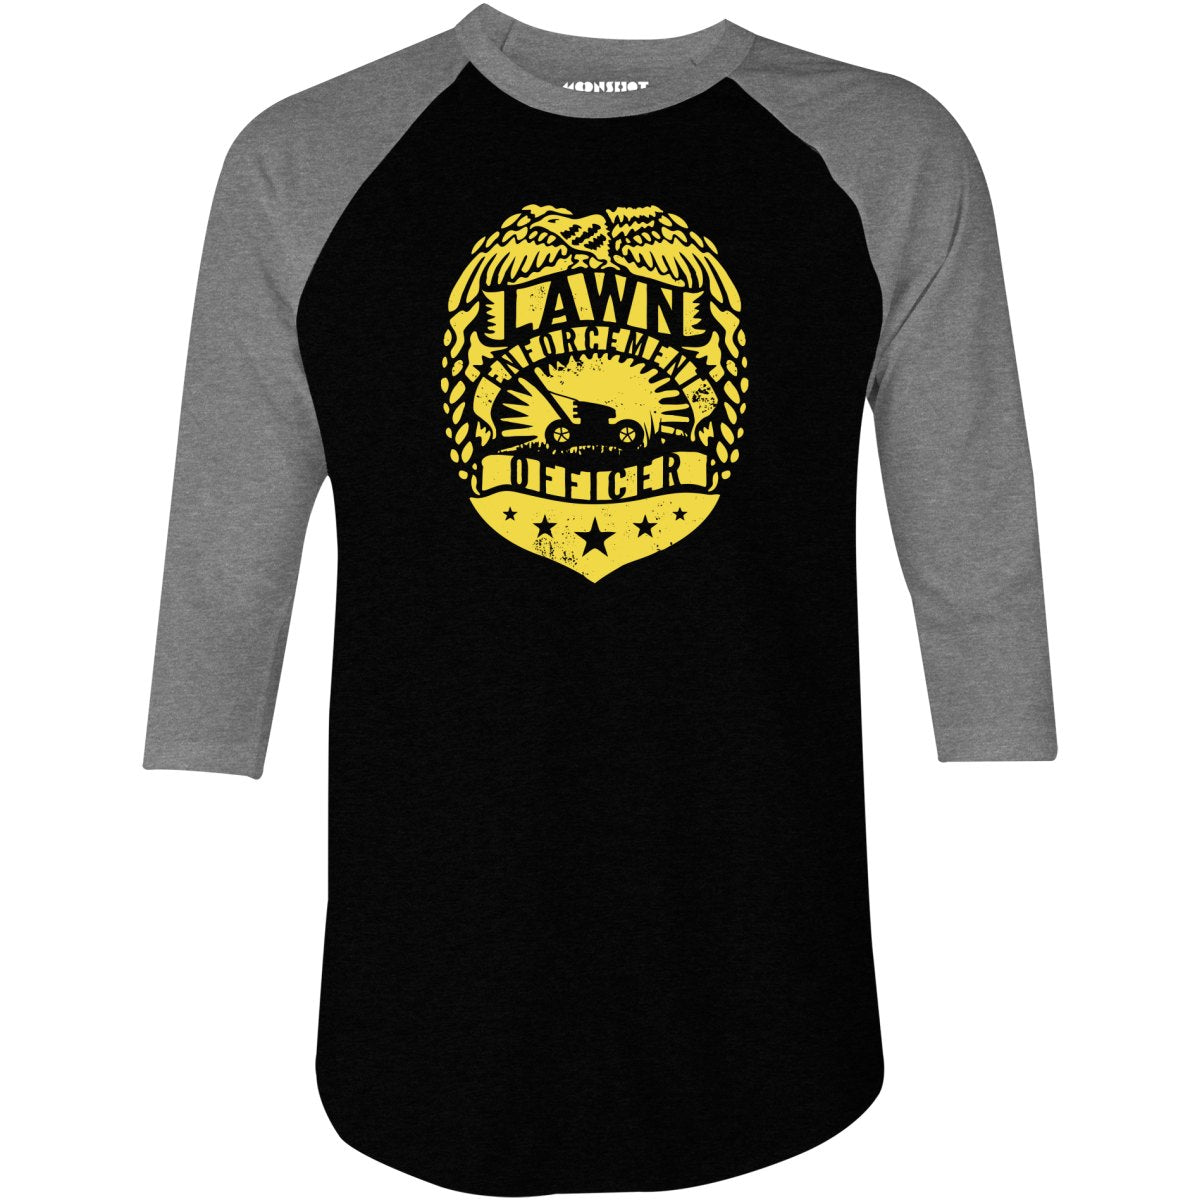 Lawn Enforcement Officer - 3/4 Sleeve Raglan T-Shirt